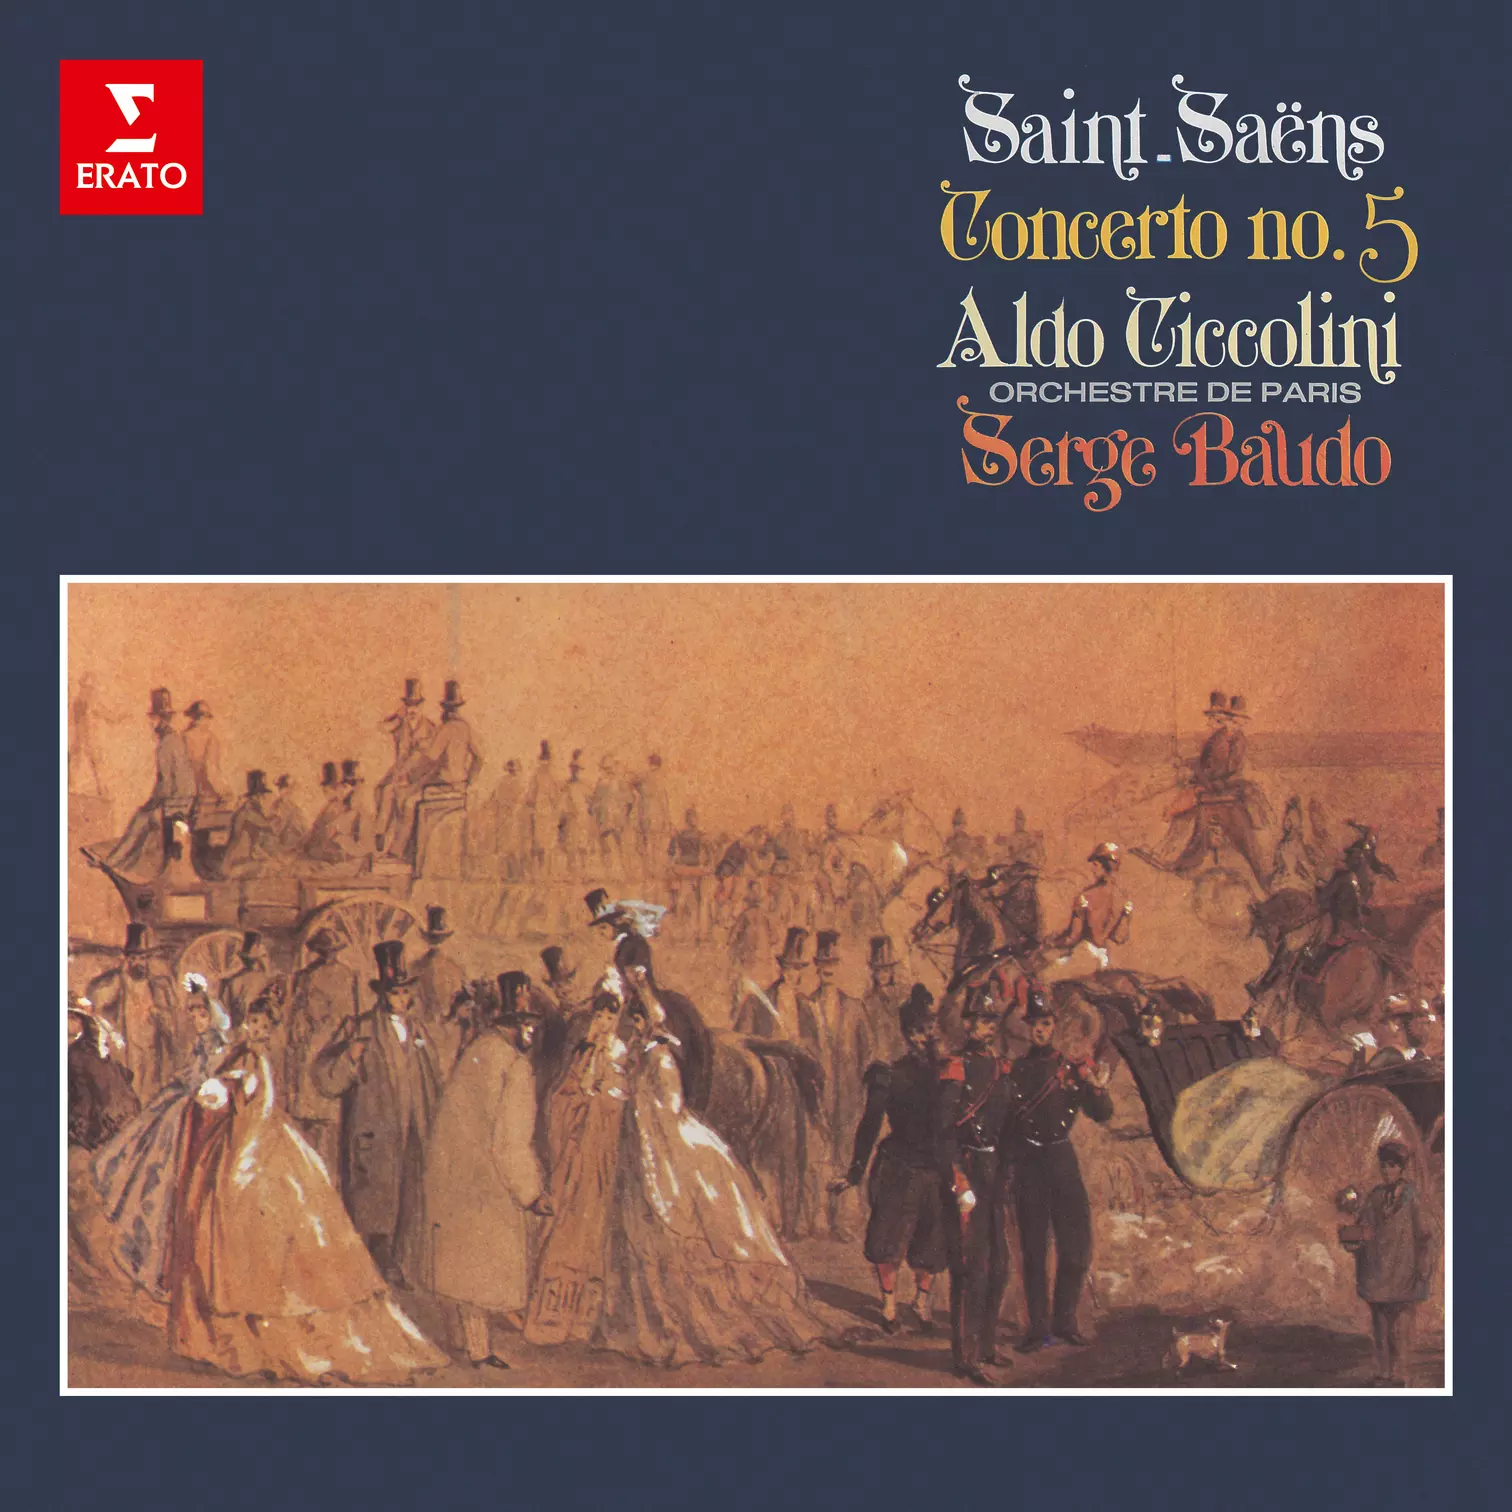 Saint-Saëns: Piano Concerto No. 5, Op. 103 "Egyptian" & Études, Op. 135